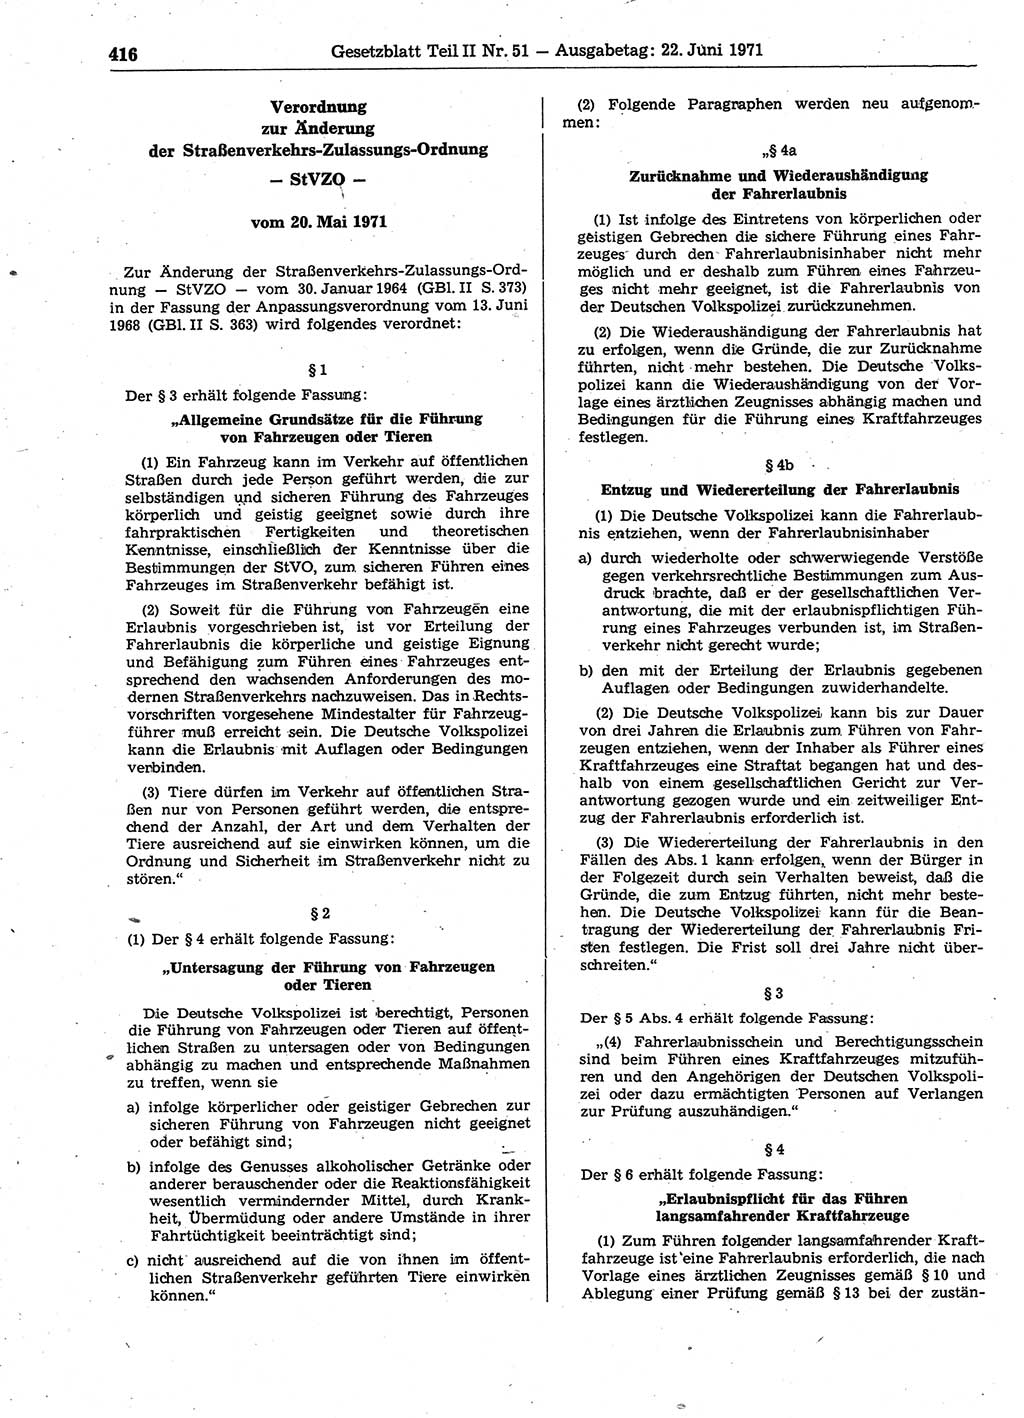 Gesetzblatt (GBl.) der Deutschen Demokratischen Republik (DDR) Teil ⅠⅠ 1971, Seite 416 (GBl. DDR ⅠⅠ 1971, S. 416)